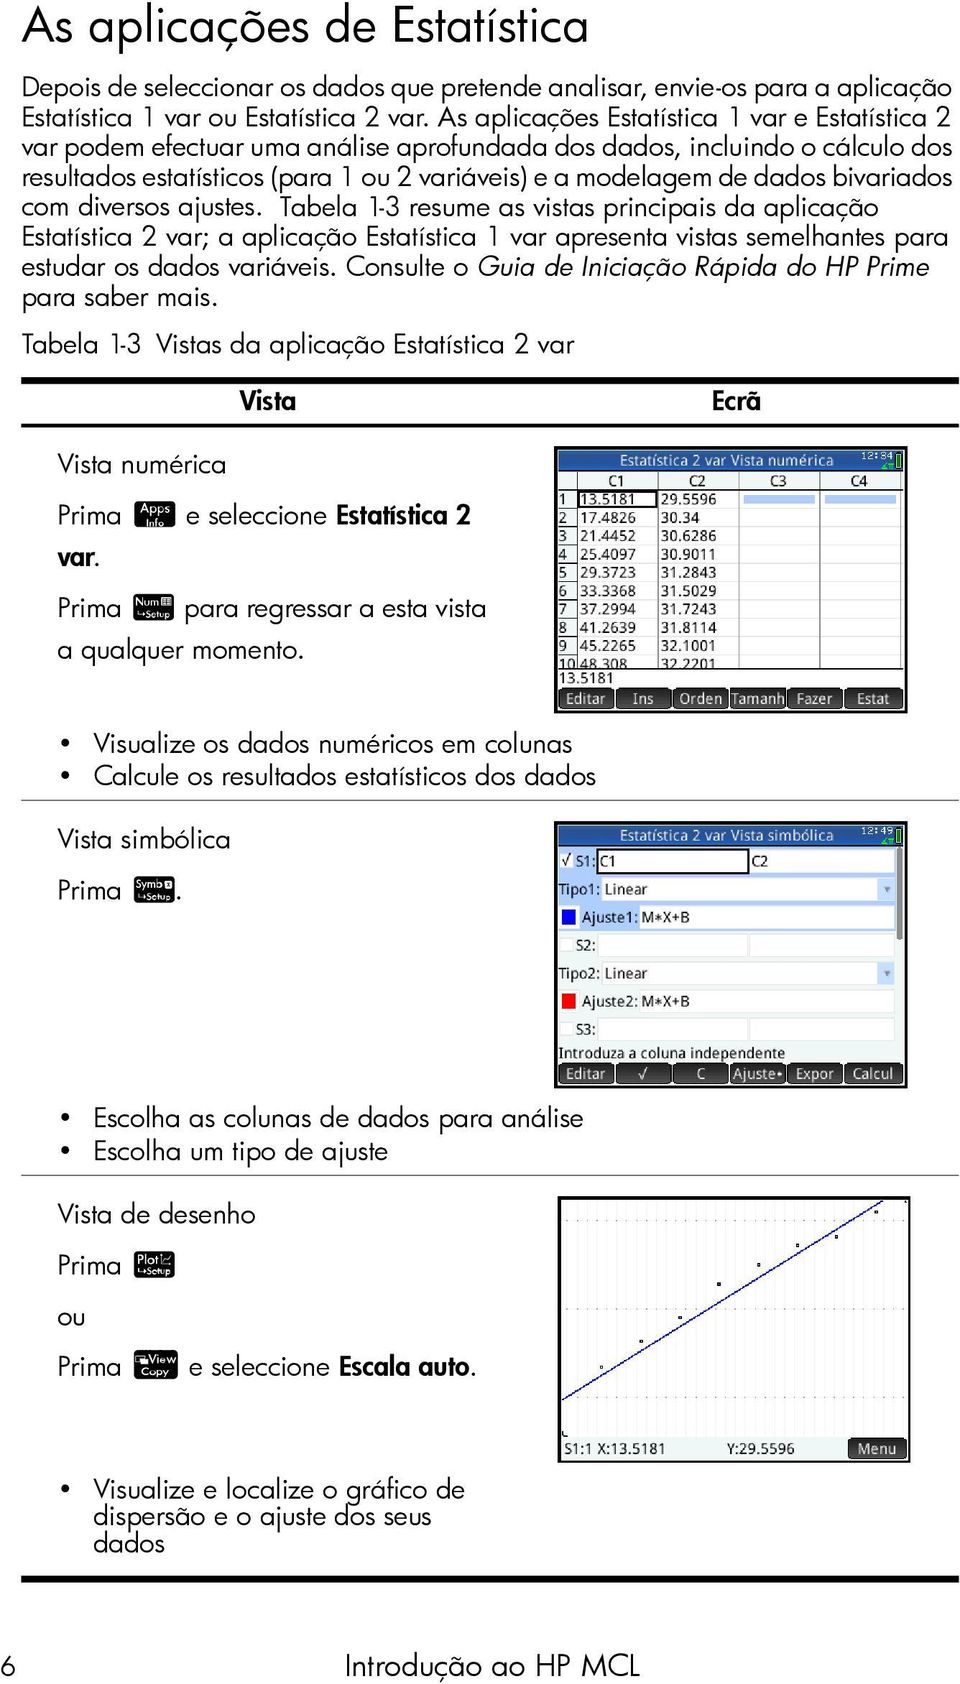 bivariados com diversos ajustes. Tabela 1-3 resume as vistas principais da aplicação Estatística 2 var; a aplicação Estatística 1 var apresenta vistas semelhantes para estudar os dados variáveis.